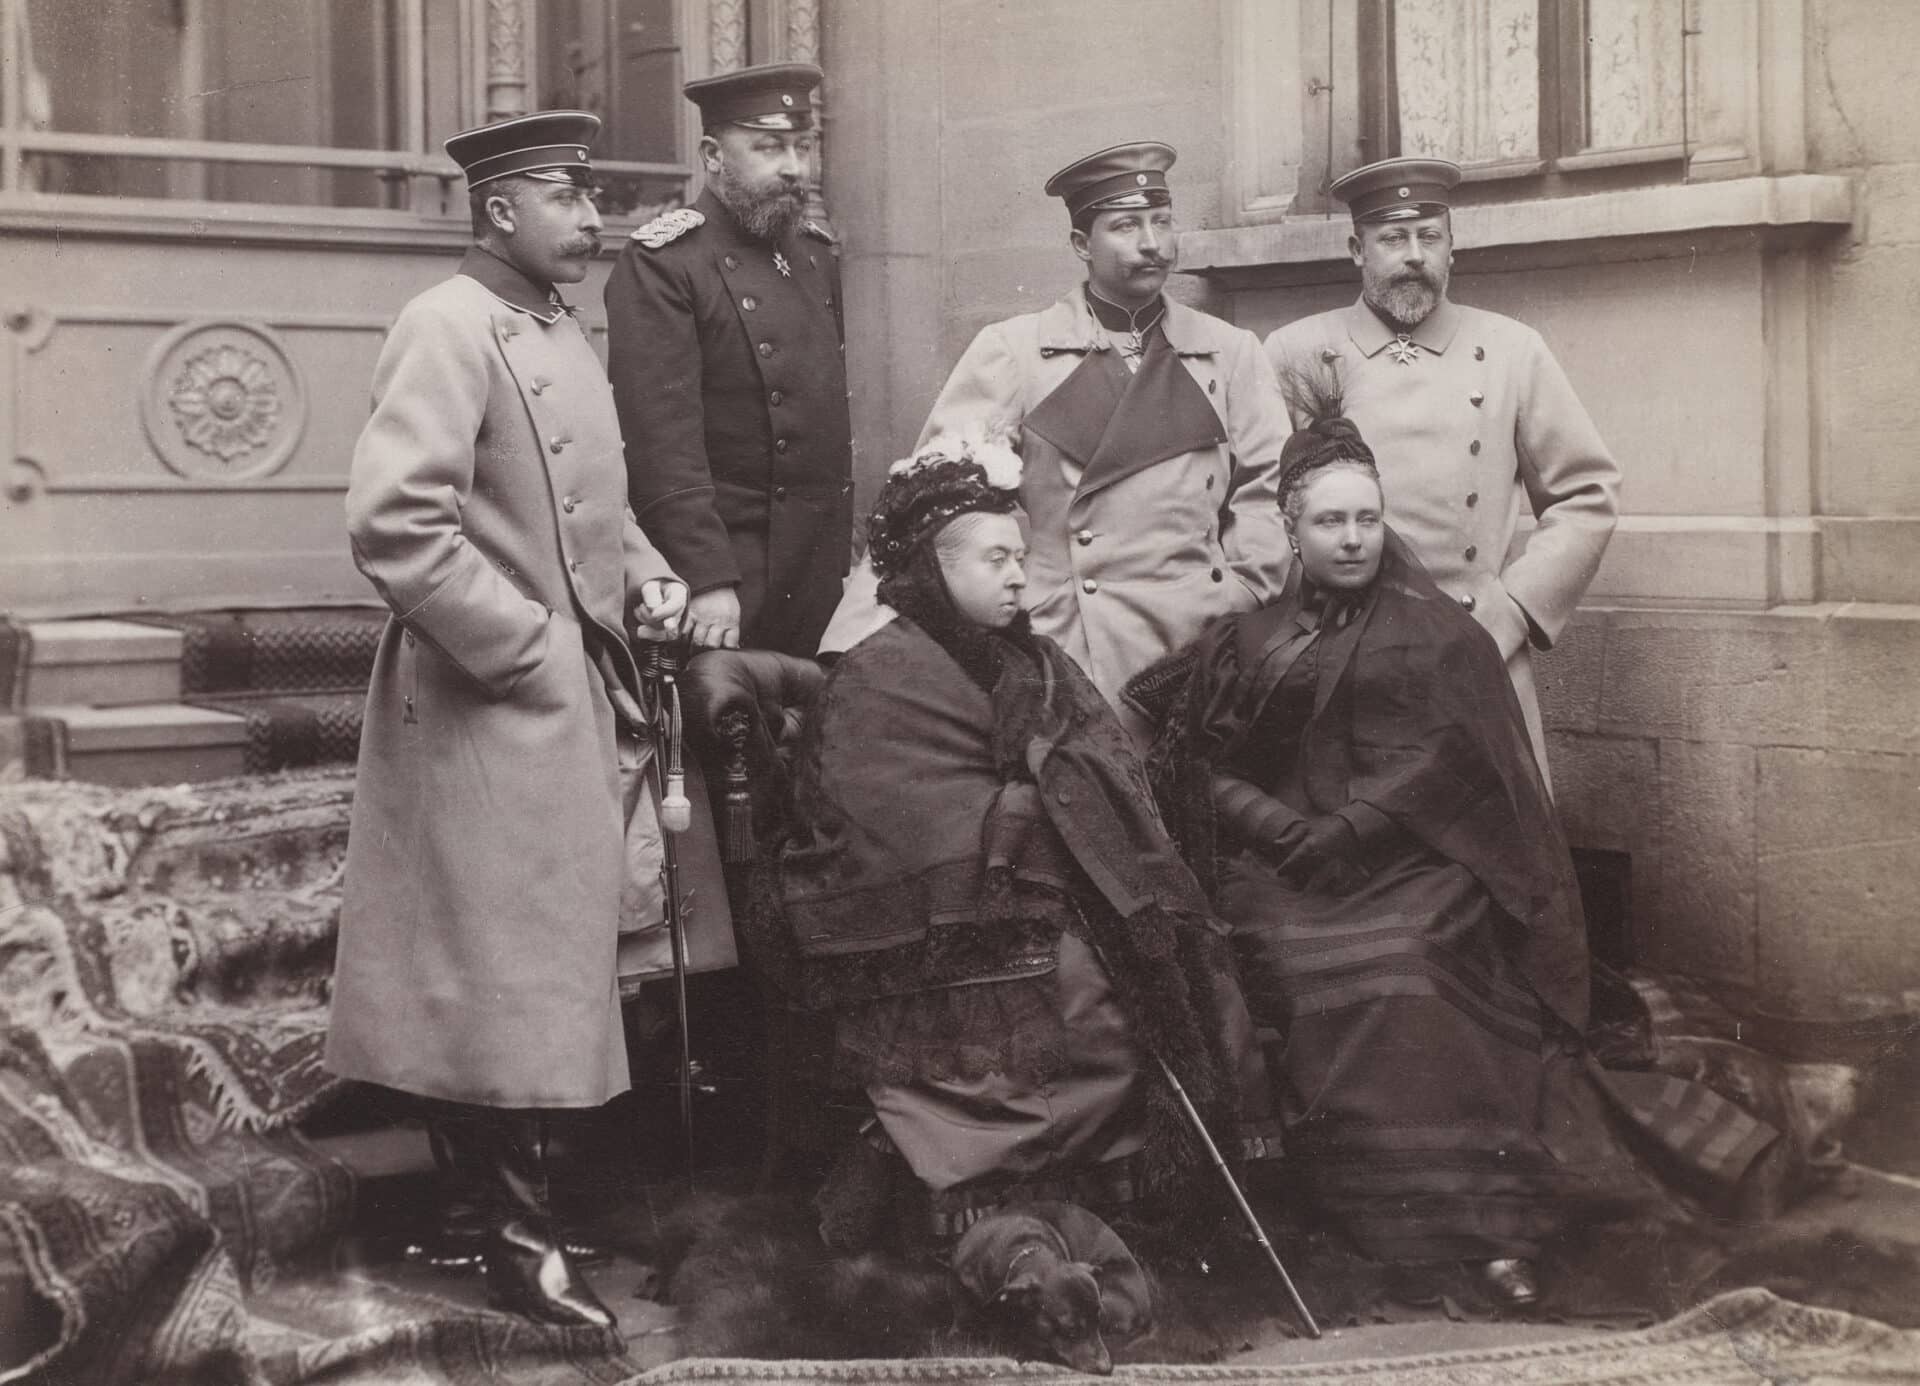 Königin Victoria (1819-1901) mit Mitgliedern ihrer Familie bei einem Besuch in Coburg. Ein Dackel liegt zusammengerollt zu ihren Füßen.